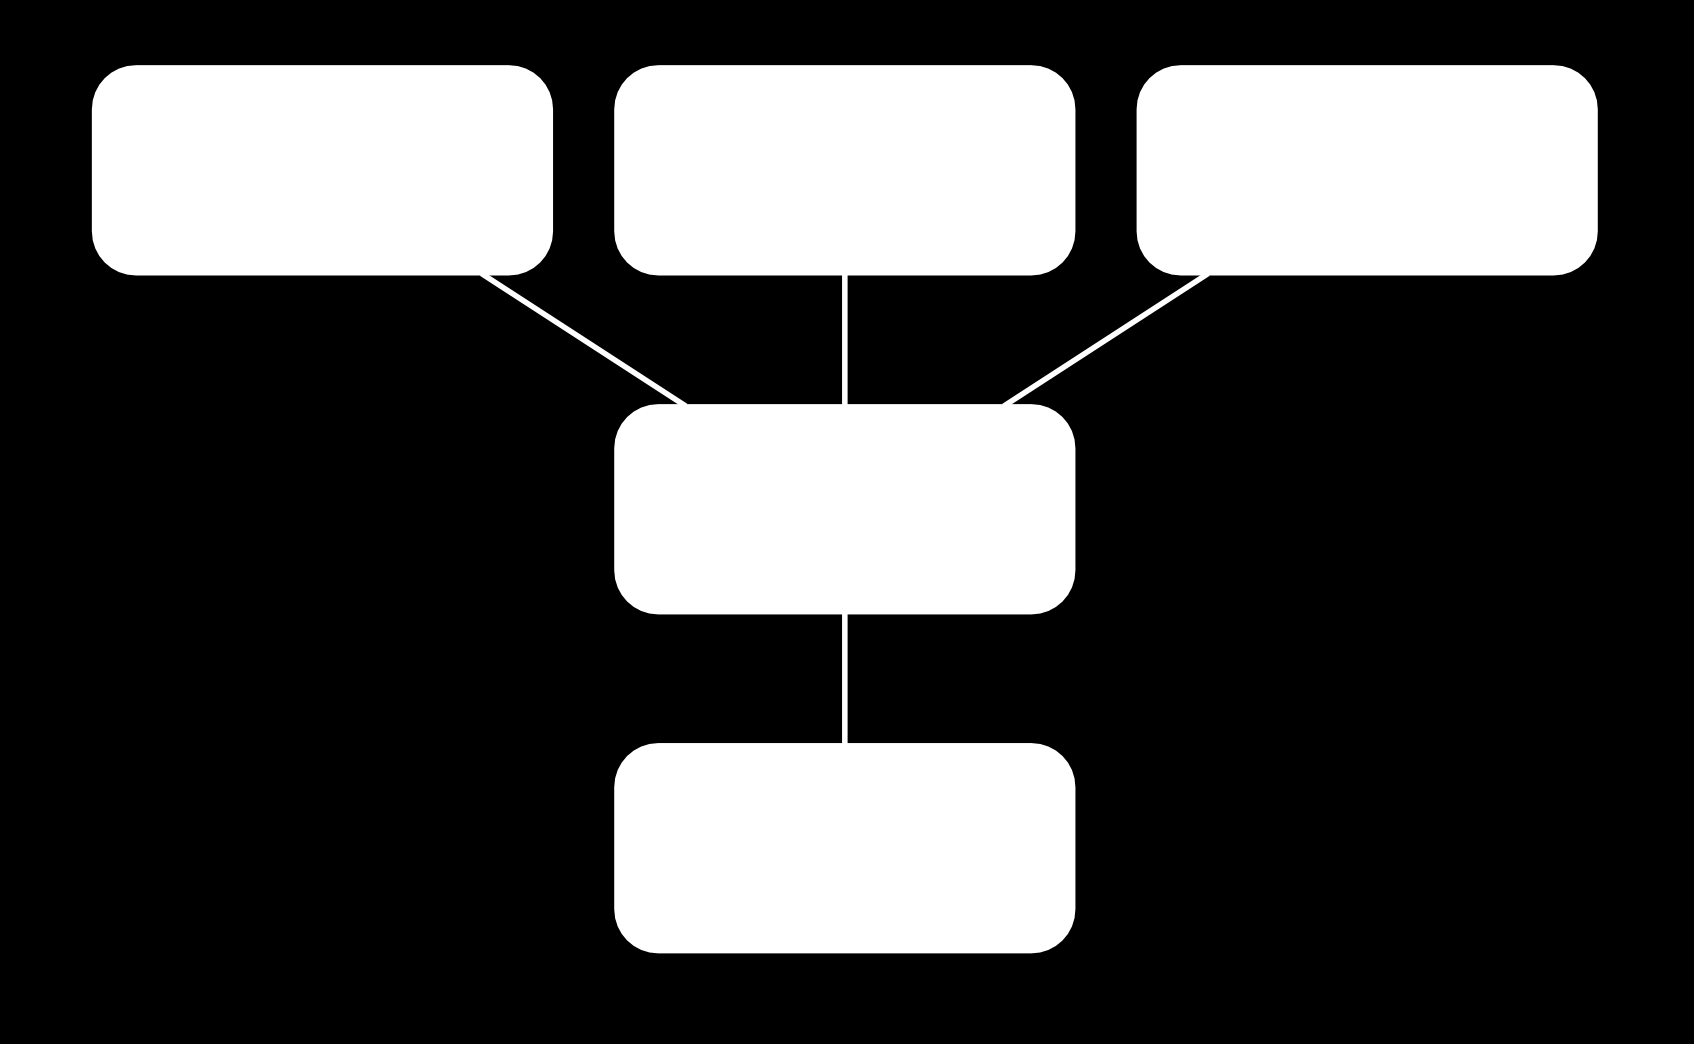 Přizpůsobení technikou samostatných aplikací za použití třívrstvé architektury ilustruje obrázek 4.2.